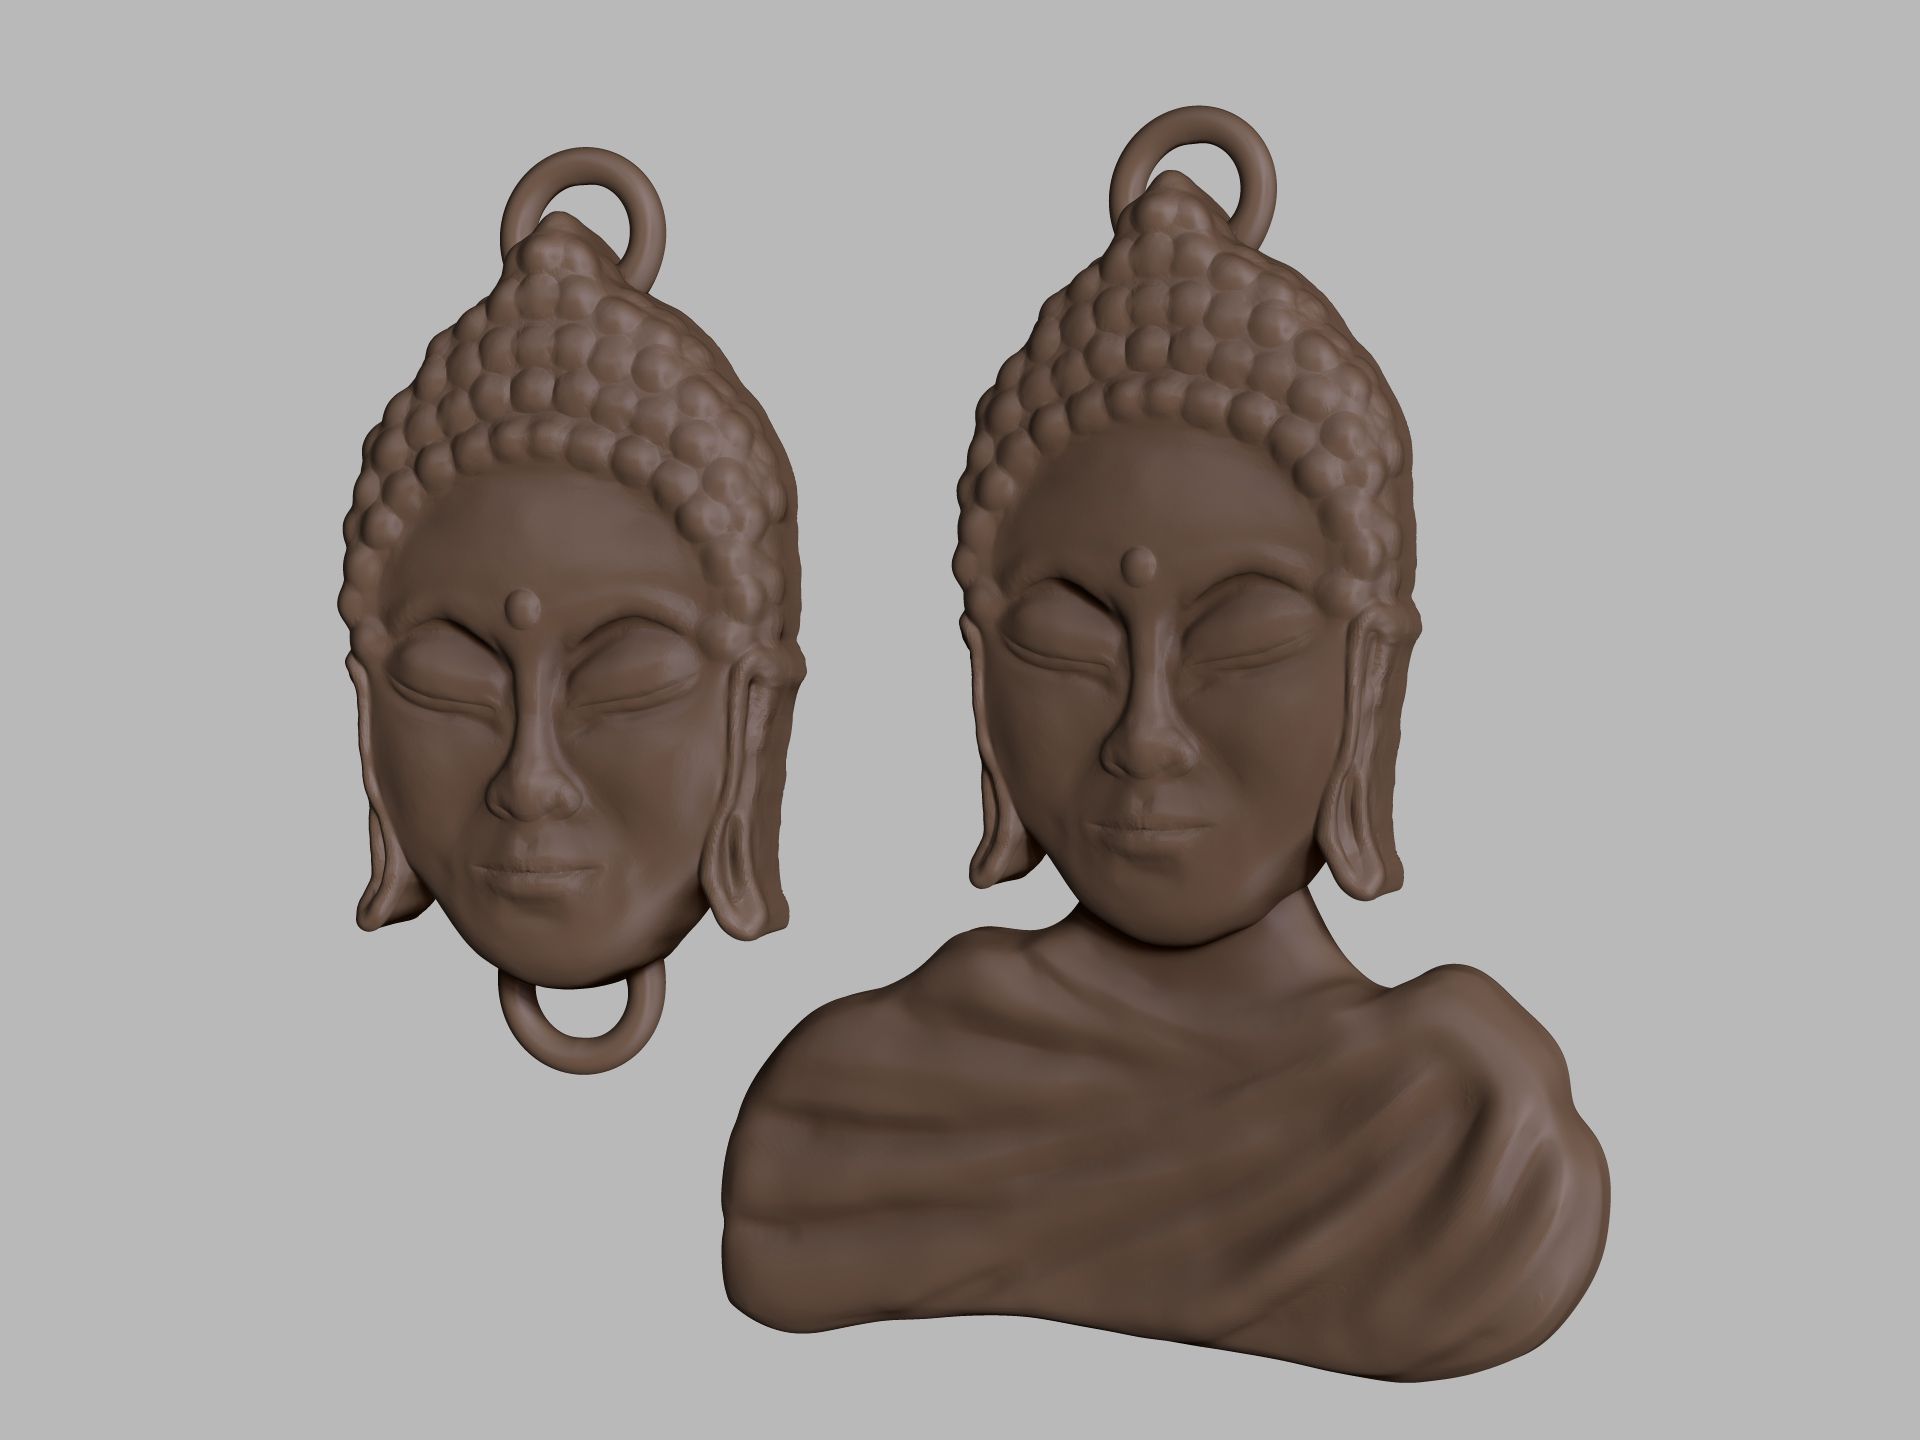 Buddha-Charm-Render.jpg Файл STL Брелоки Будды・Модель для печати в 3D скачать, Kaios